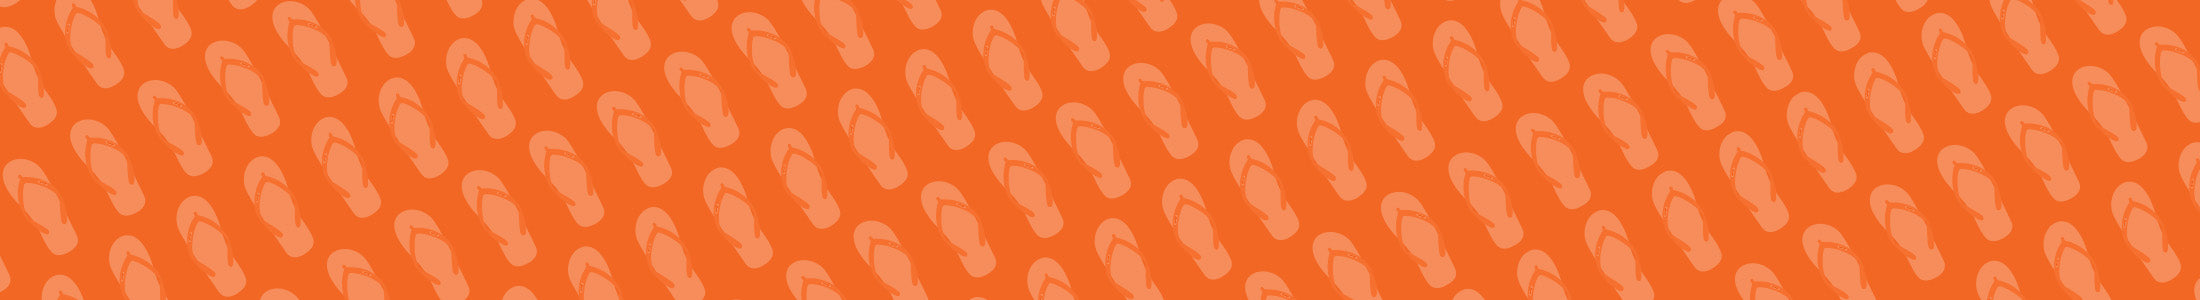 bg orange slippers